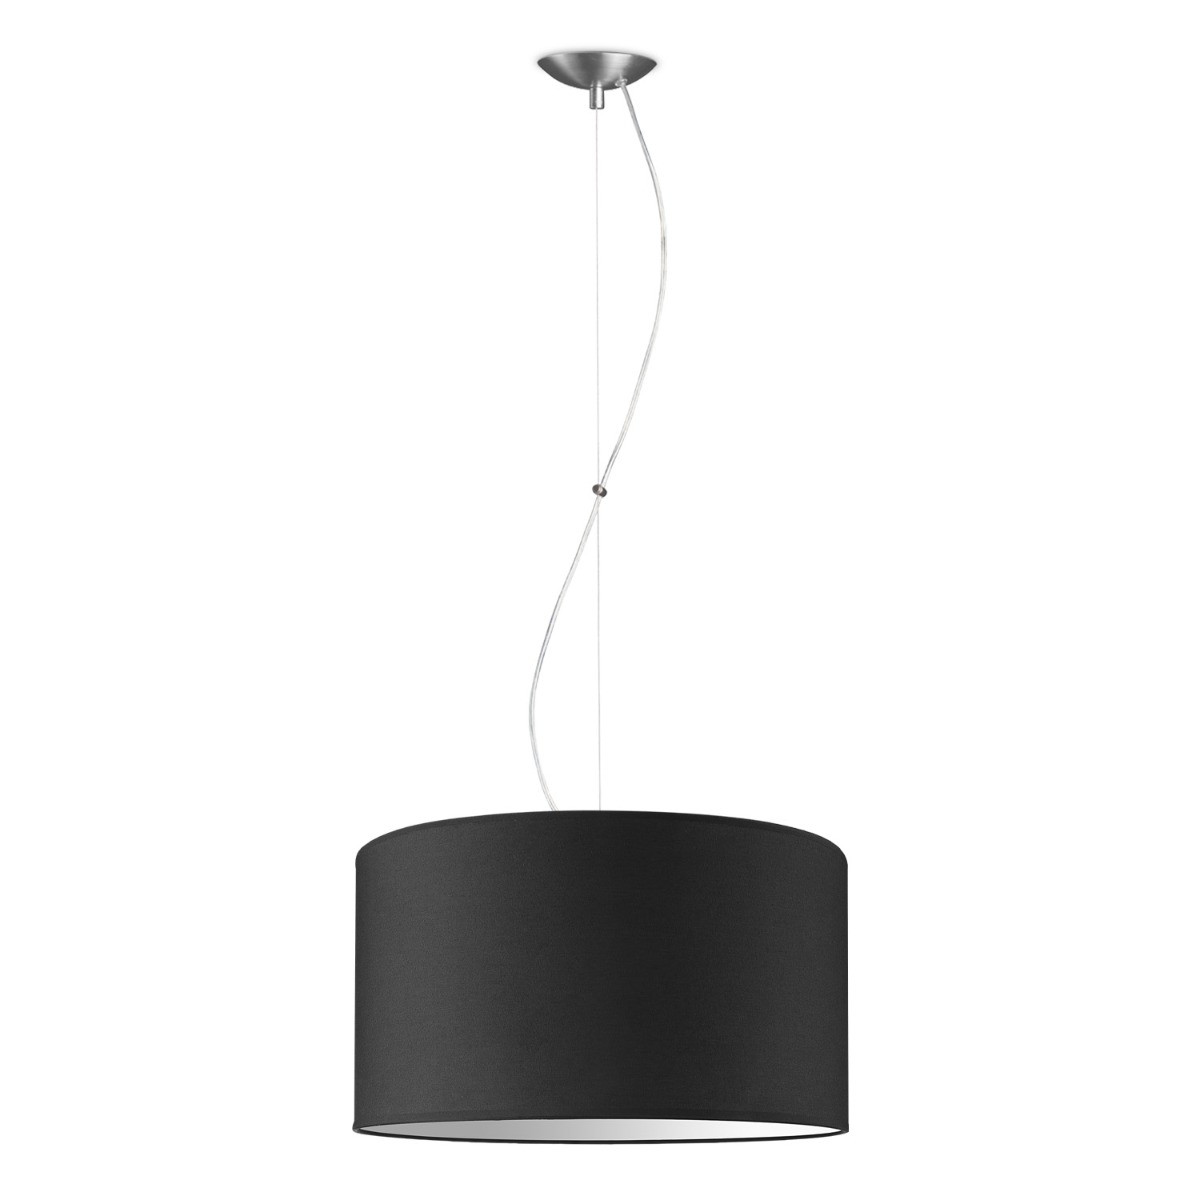 Light depot - hanglamp basic deluxe bling Ø 45 cm - zwart - Outlet